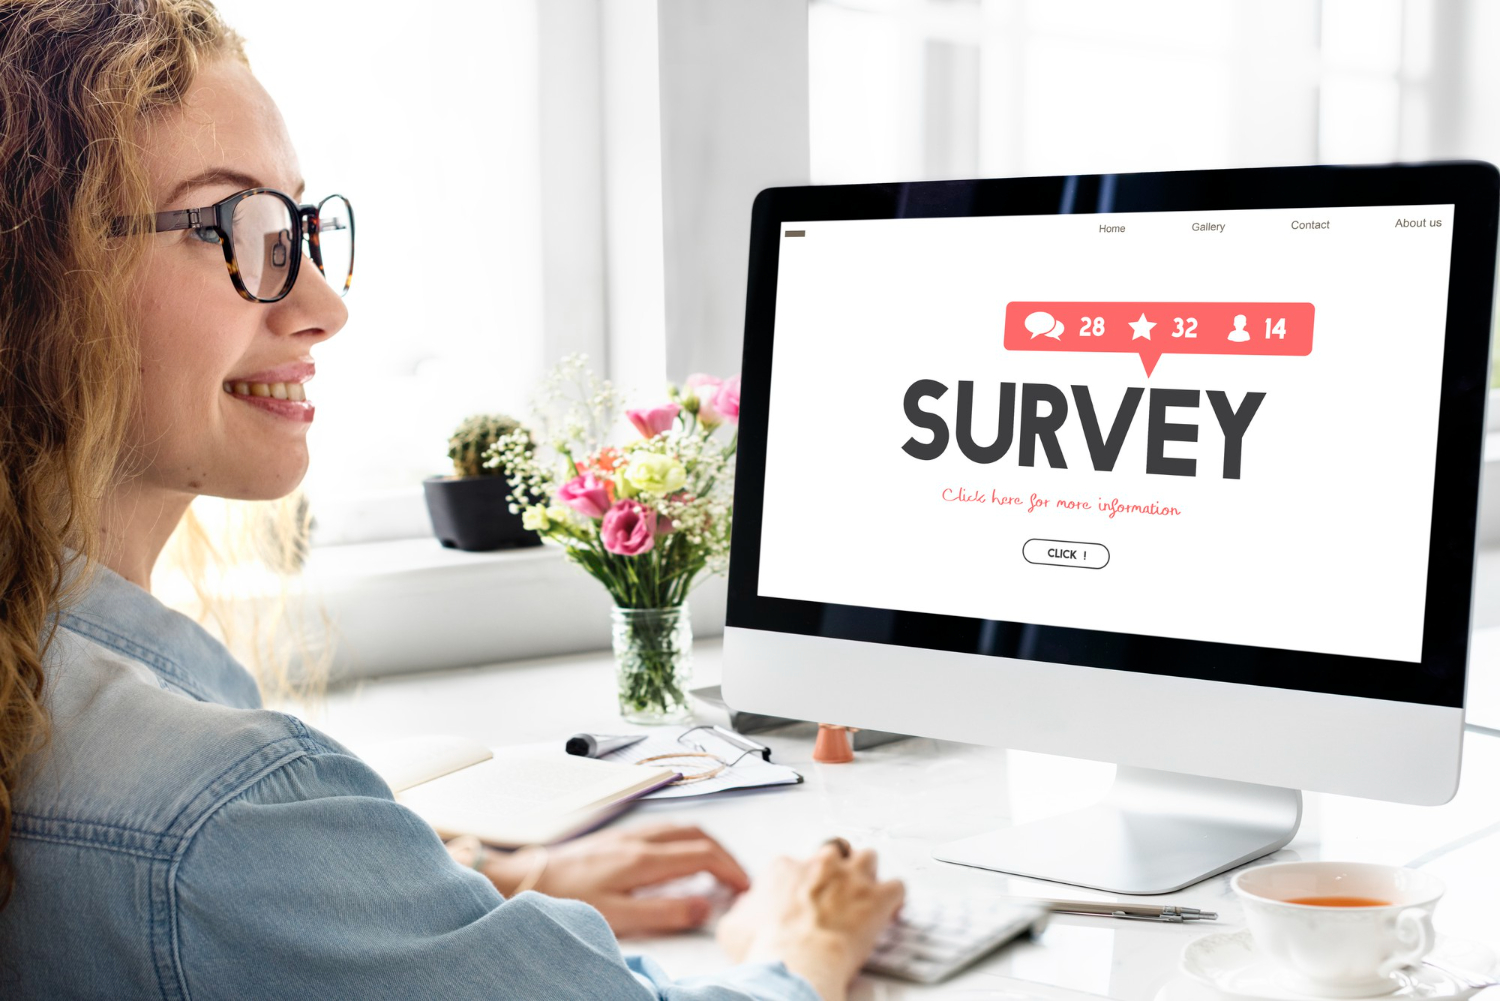 Employee engagement surveys